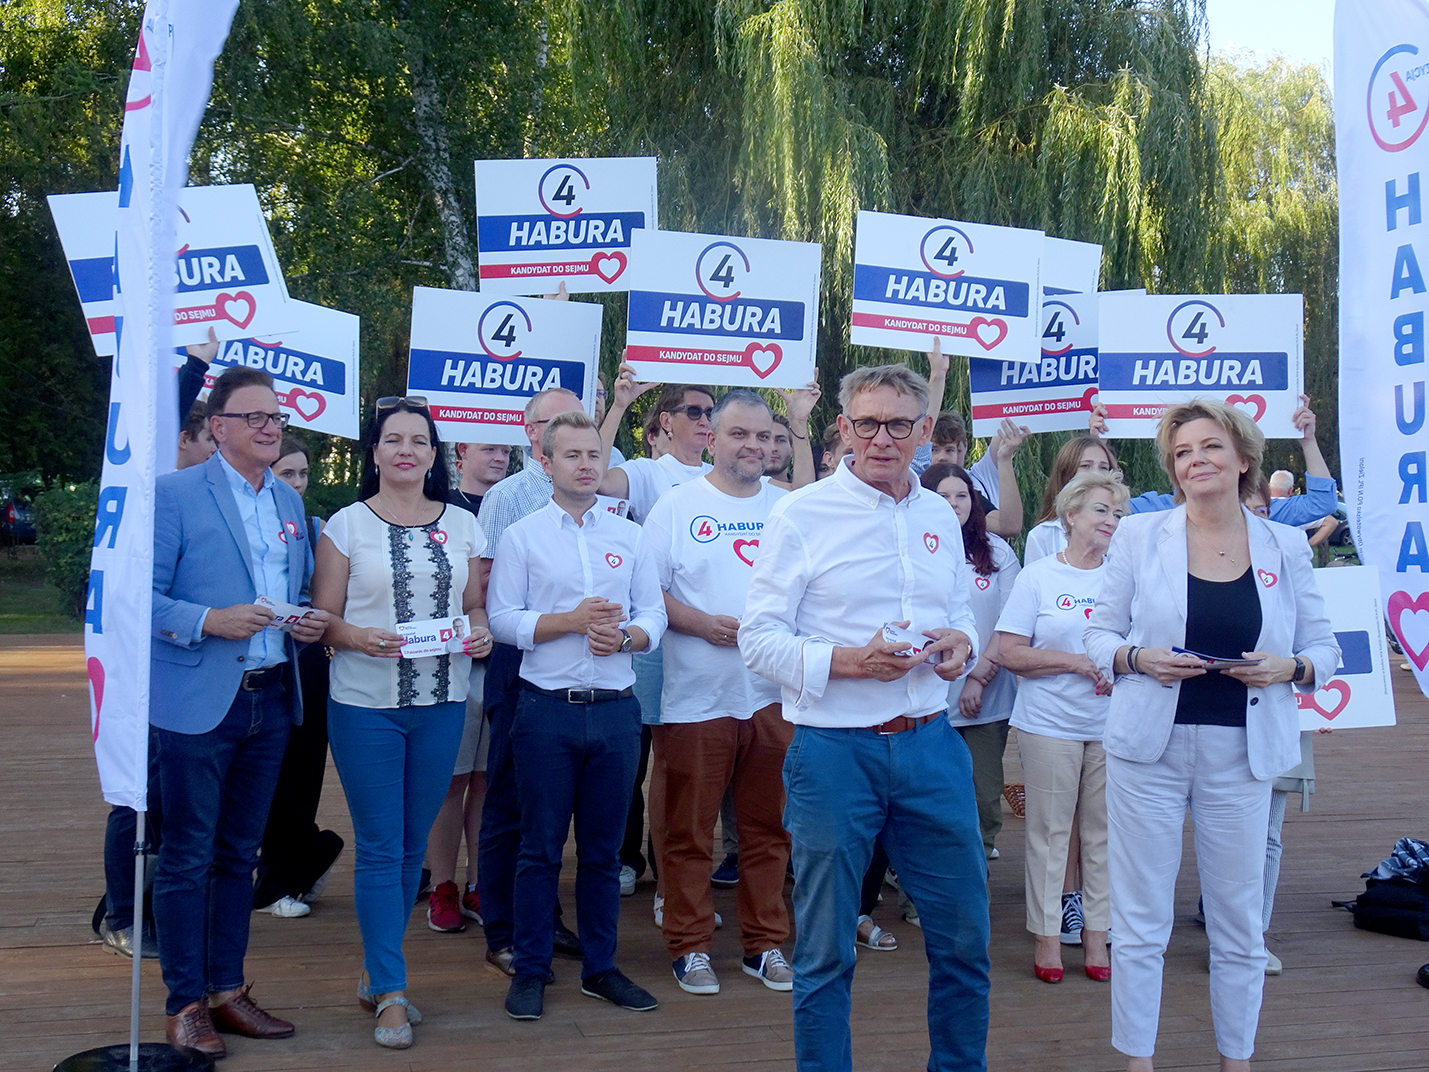 Poparcie prezydent Łodzi dla Krzysztofa Habury